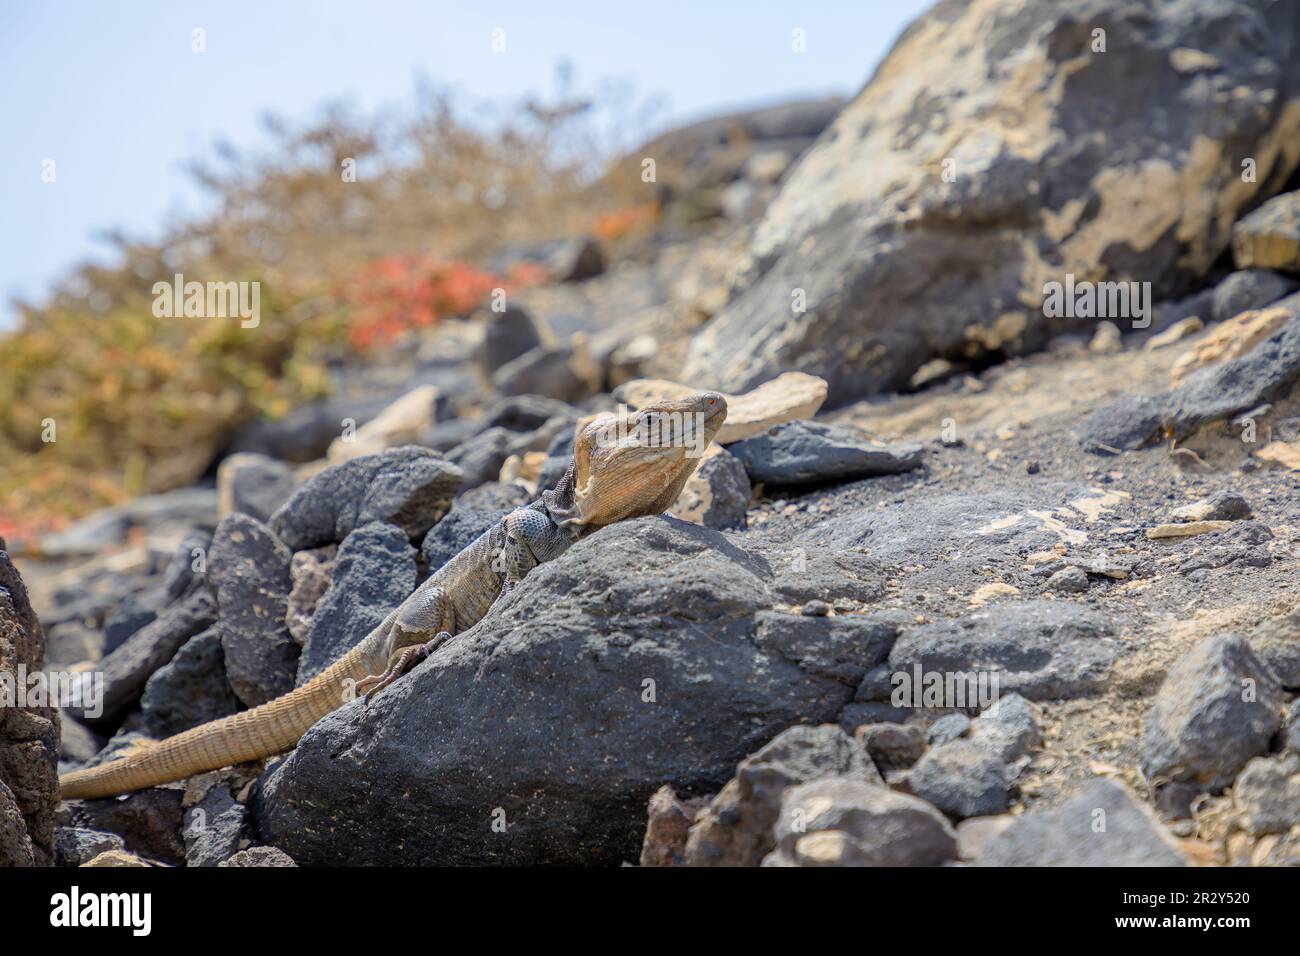 Gallotia stehlini ist eine riesige Eidechse, die nur auf Gran Canaria zu finden ist. Es hat ein ausgeprägtes Aussehen und ein Interessantes Verhalten, was es zu einem beliebten Produkt macht Stockfoto